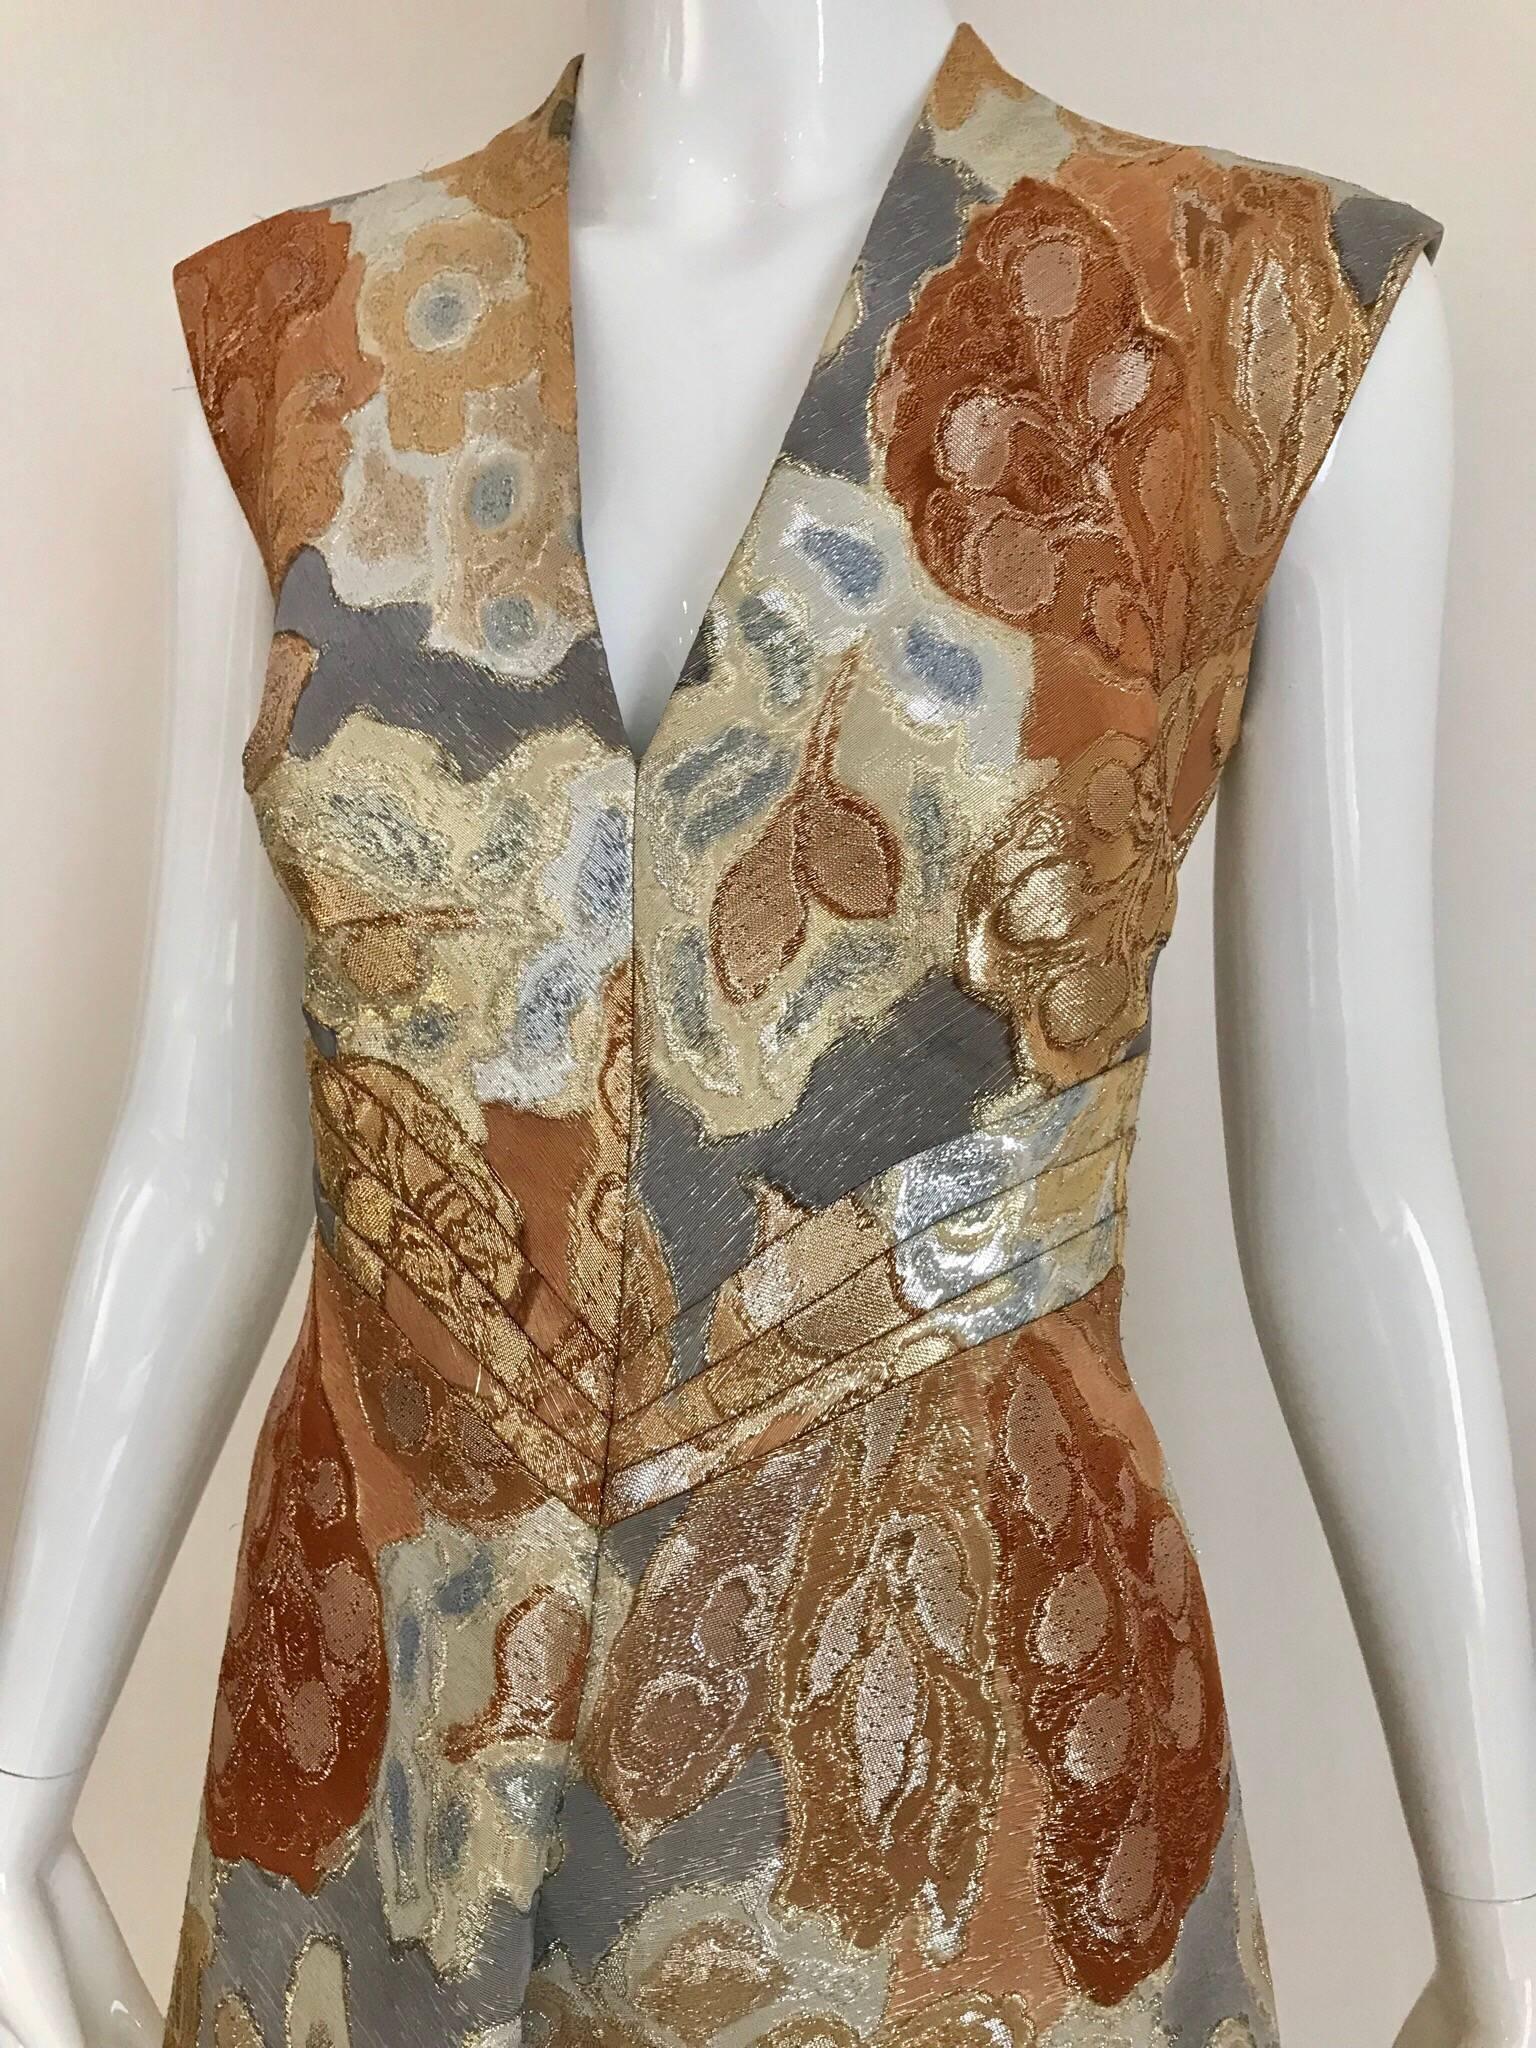 Robe sans manches en brocart de soie métallique or, orange et gris, Vintage Pauline Trigere circa 1971, avec veste courte. La robe est entièrement doublée. 
Taille : Small / Taille : 2/4